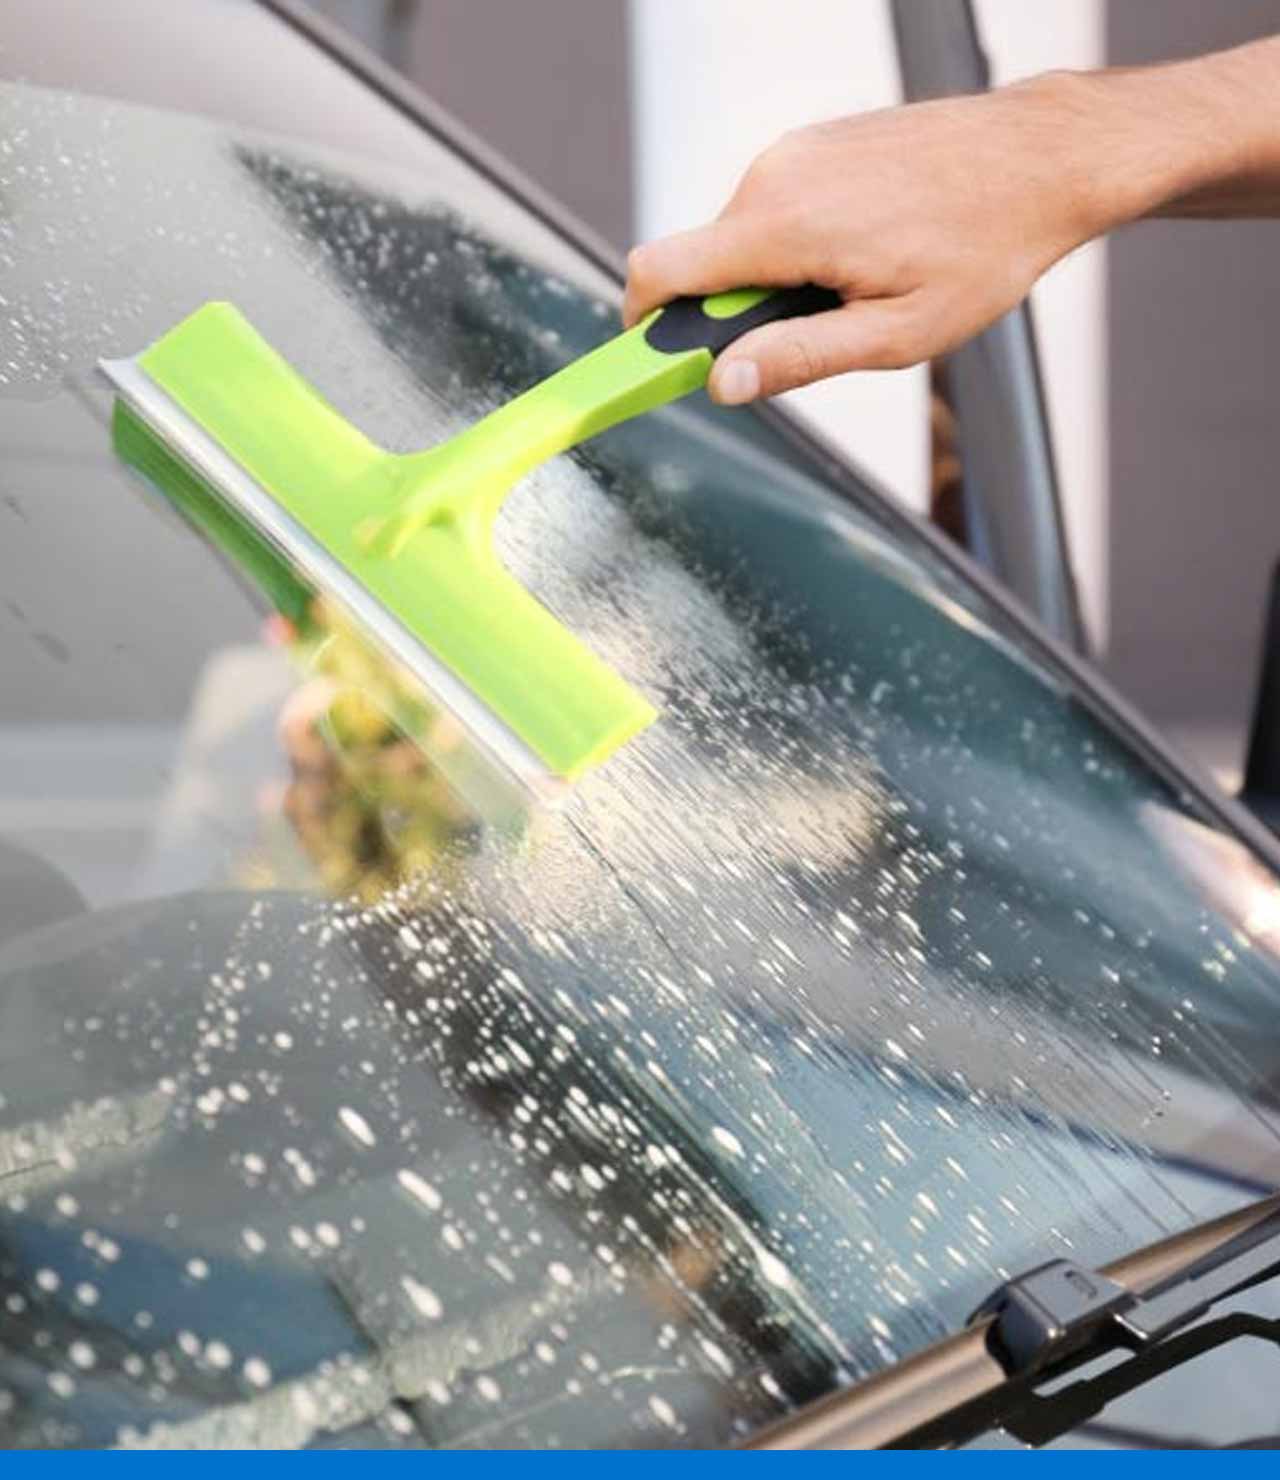 Cómo limpiar los vidrios y el parabrisas del auto?